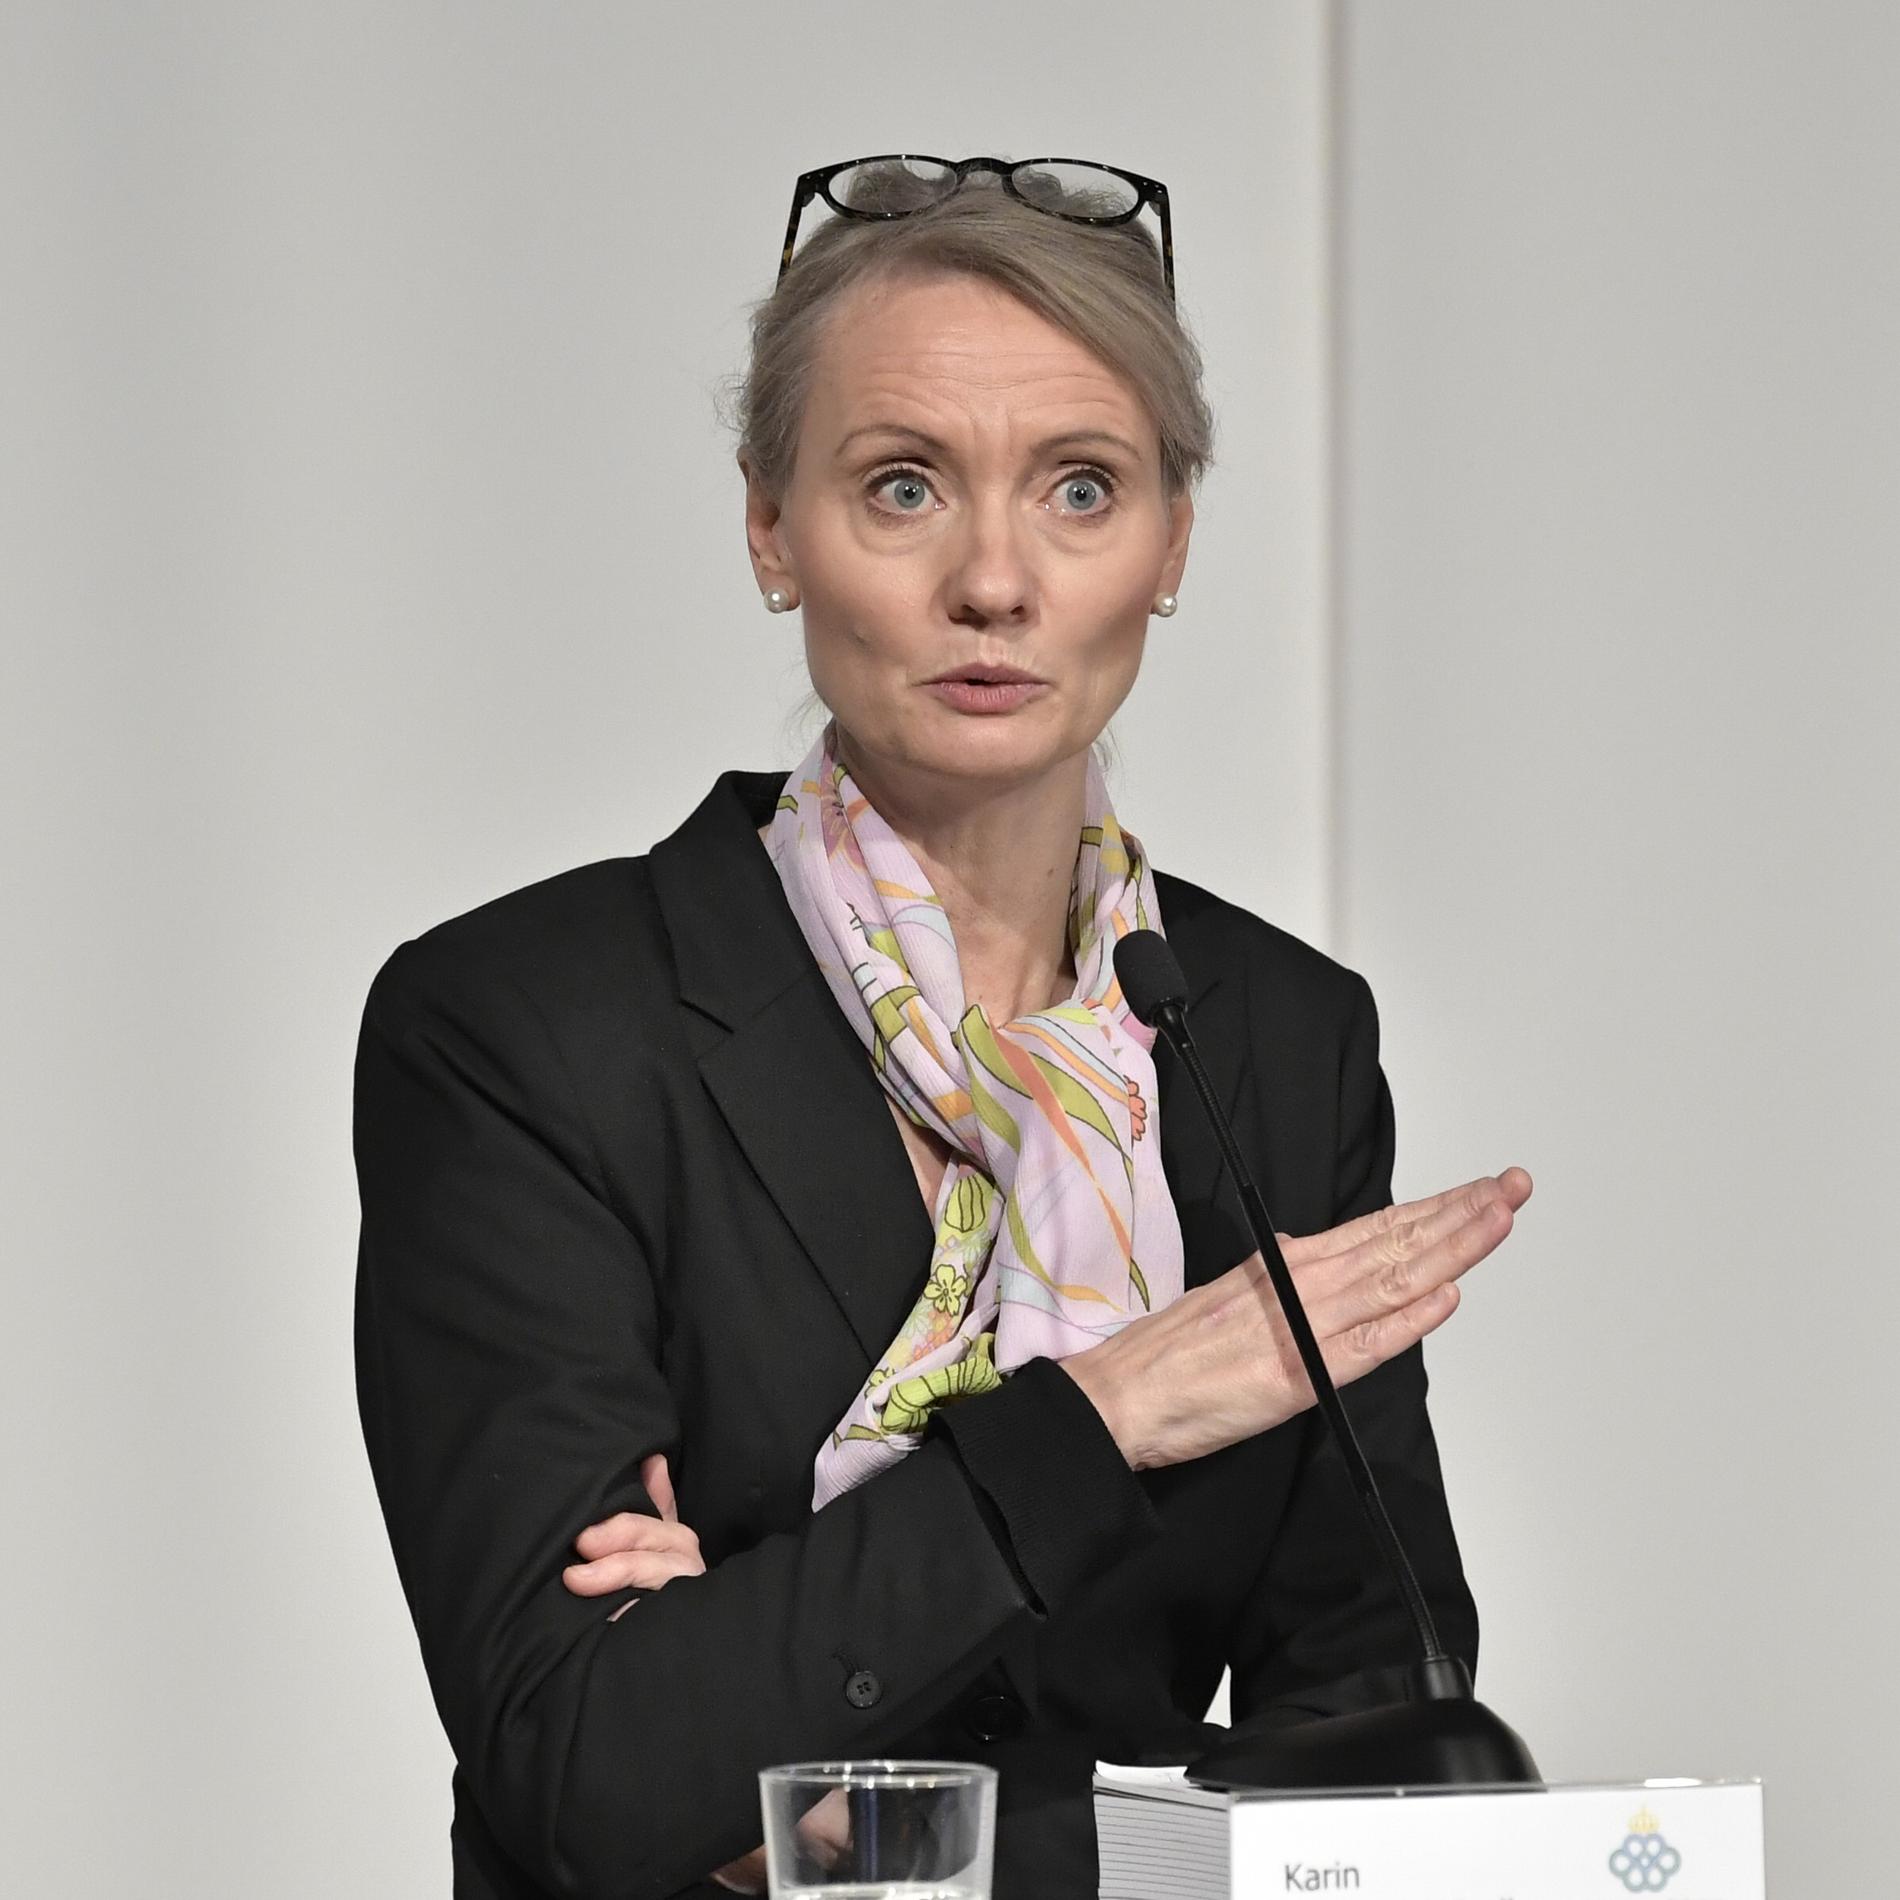 Karin Tegmark Wisell på Folkhälsomyndigheten